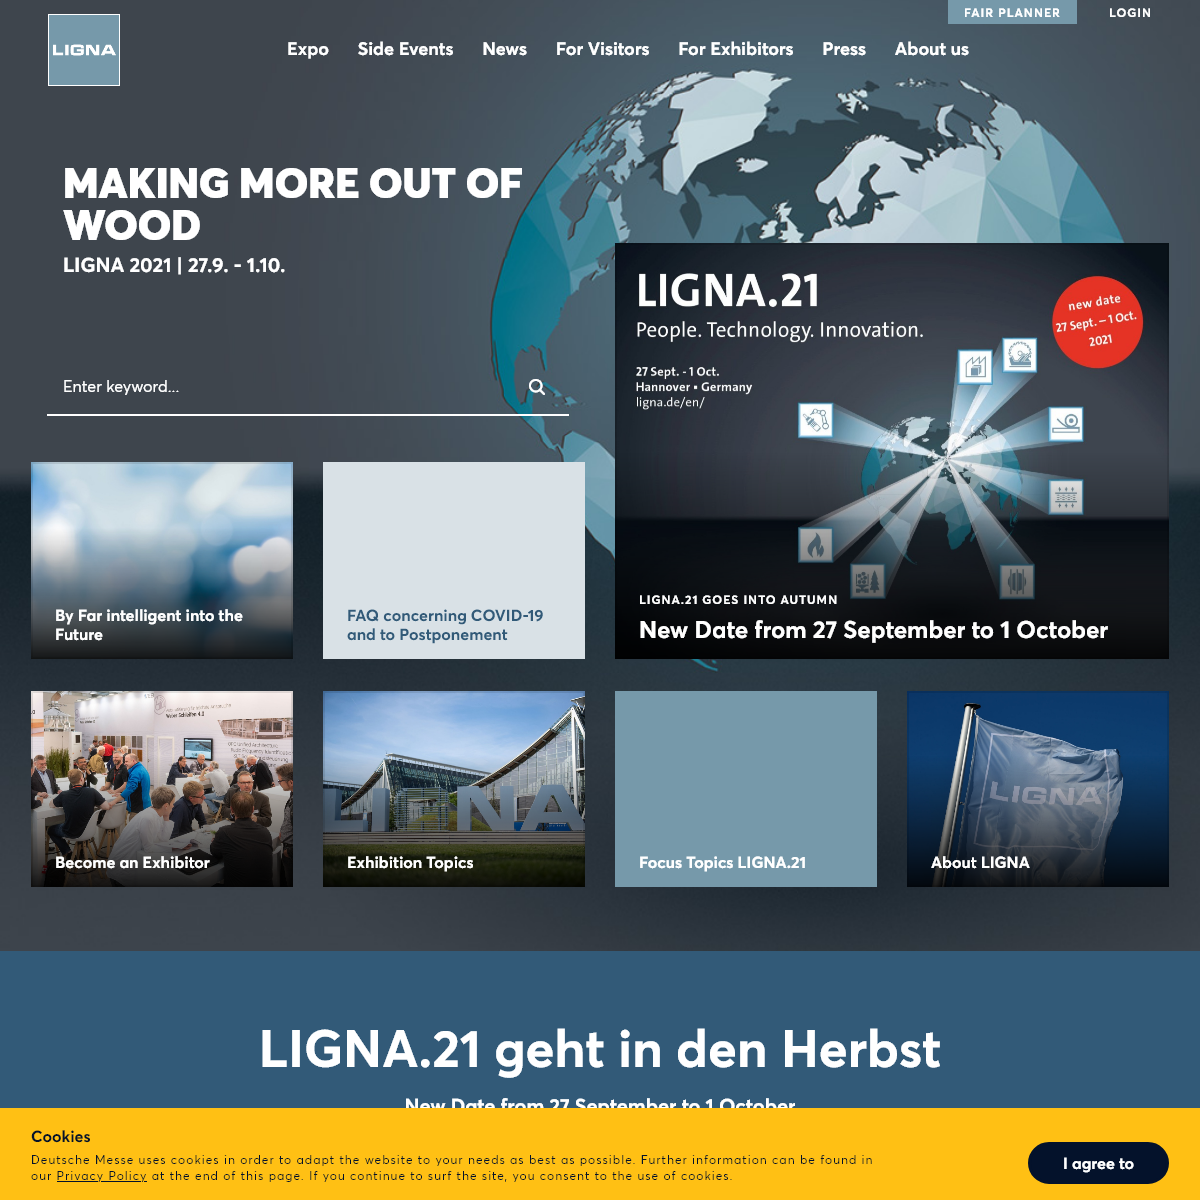 A complete backup of ligna.de